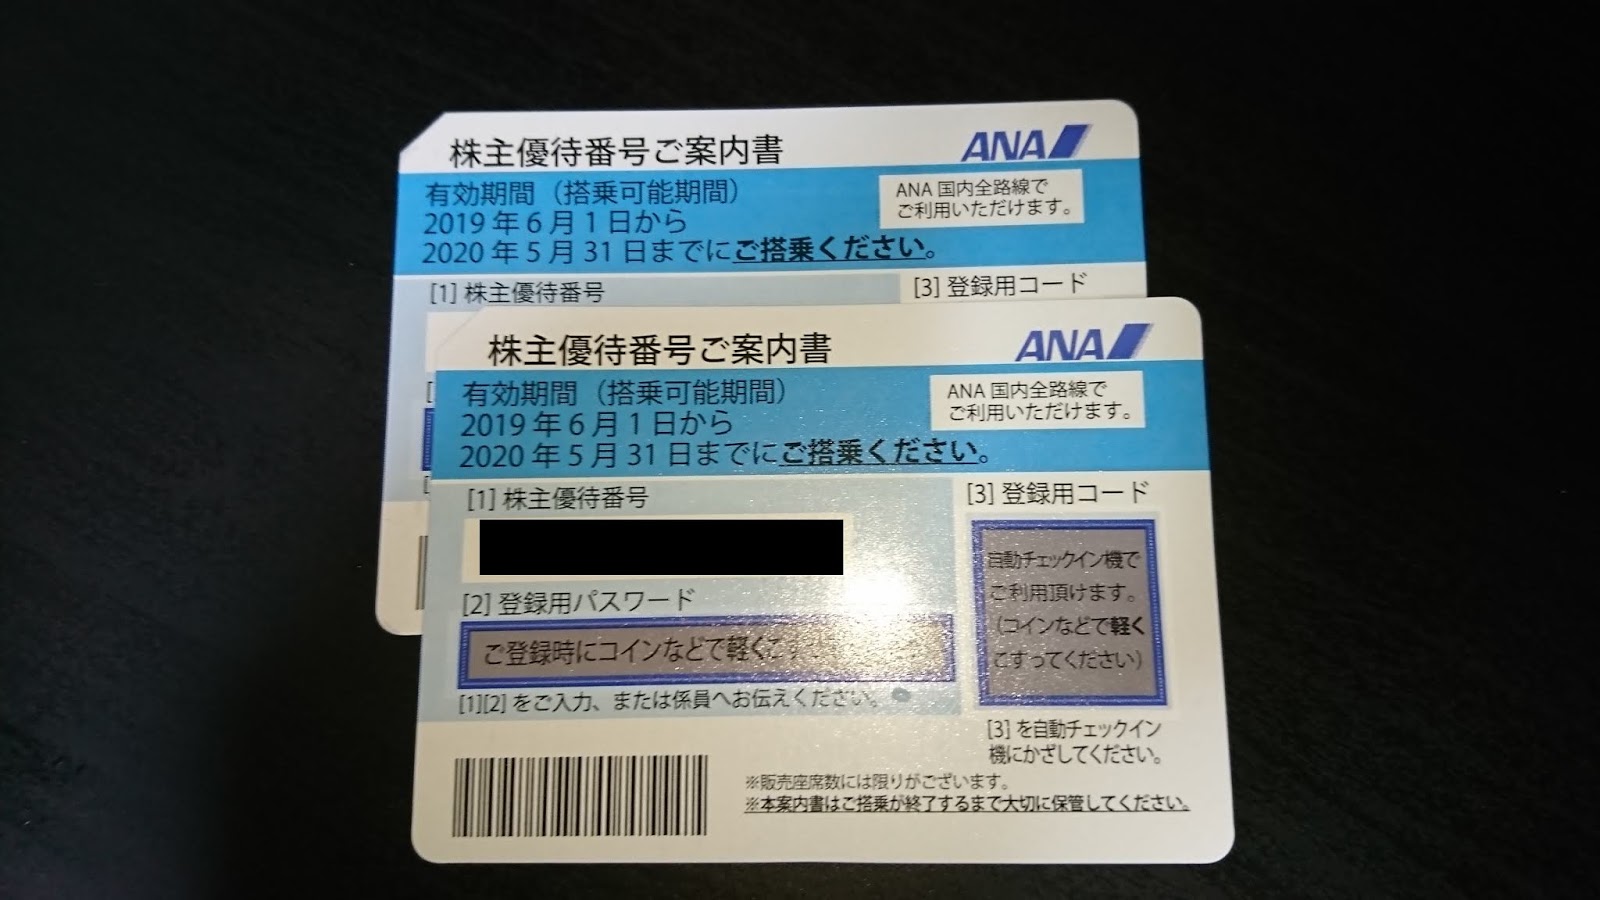 【株主優待】2019 ANA株主優待 ANA国内線搭乗優待券が届きました - 生活と株